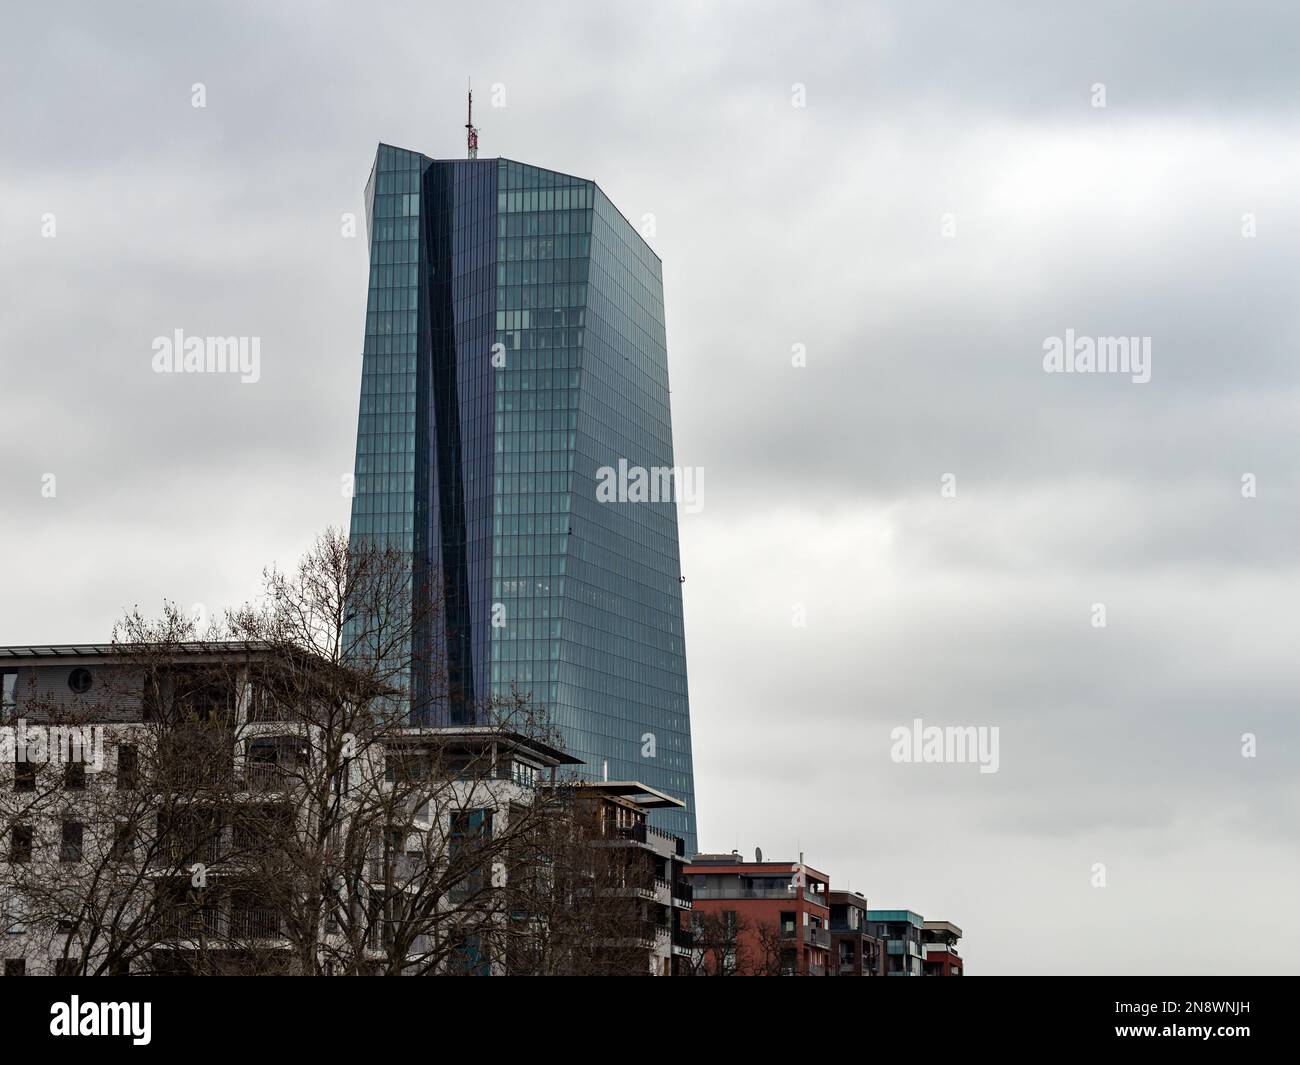 Banca Centrale europea torre nel paesaggio urbano. L'esterno dell'edificio ECB si trova nello skyline. L'autorità monetaria per la politica finanziaria nella zona euro. Foto Stock